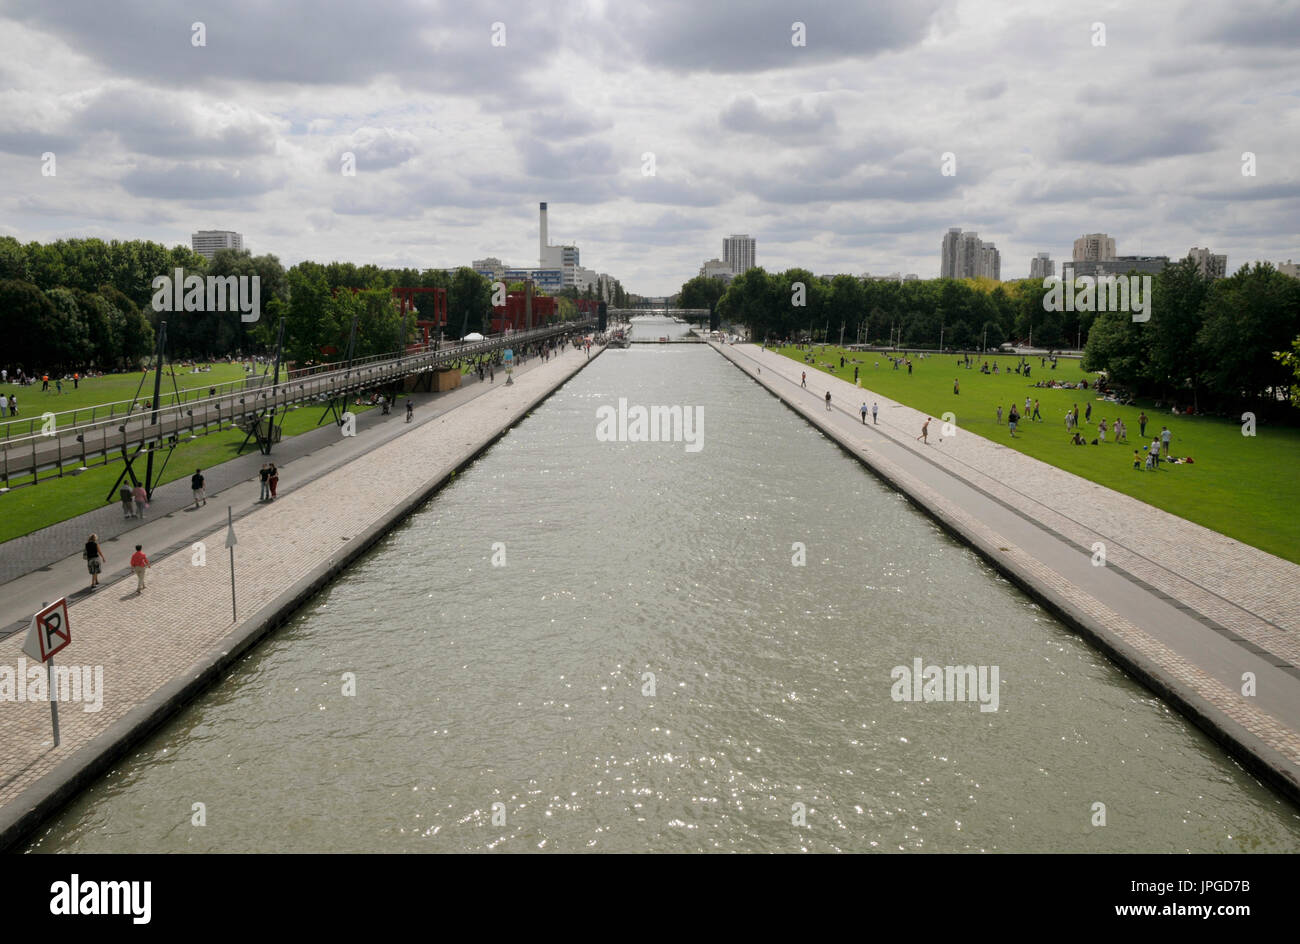 Du Canal Saint-Martin et du parc la Villette près de Cabaret Sauvage et Cité des Sciences et de l'Industrie, Paris, France. Banque D'Images